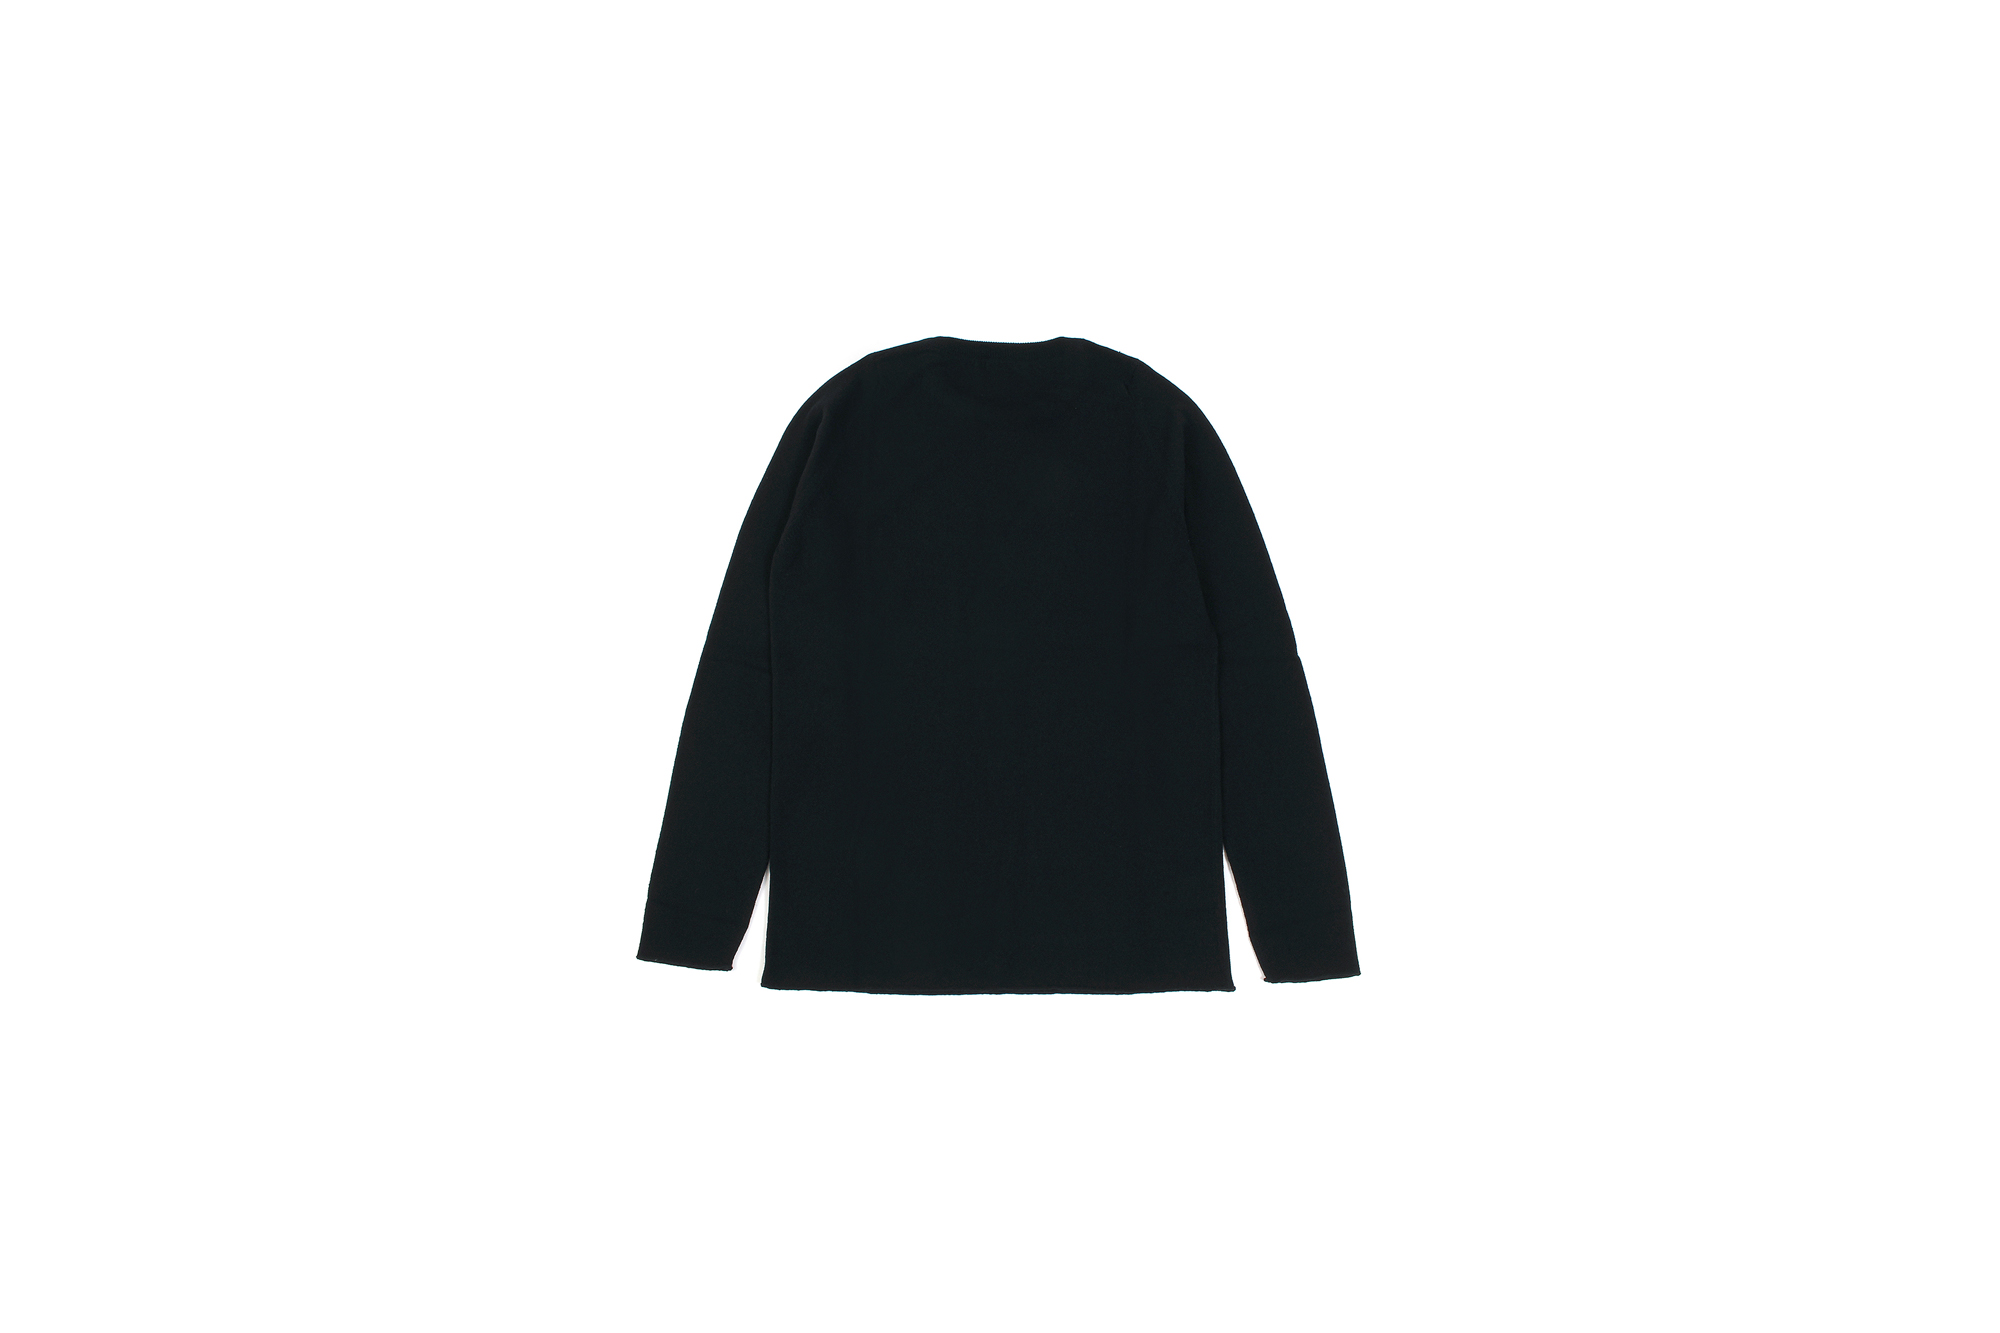 lucien pellat-finet(ルシアン ペラフィネ) Horn Skull Cashmere Sweater (ホーン スカル カシミア セーター) インターシャ カシミア スカル セーター BLACK × BROWN (ブラック × ブラウン) made in scotland (スコットランド製) 2020 春夏新作 愛知 名古屋 altoediritto アルトエデリット